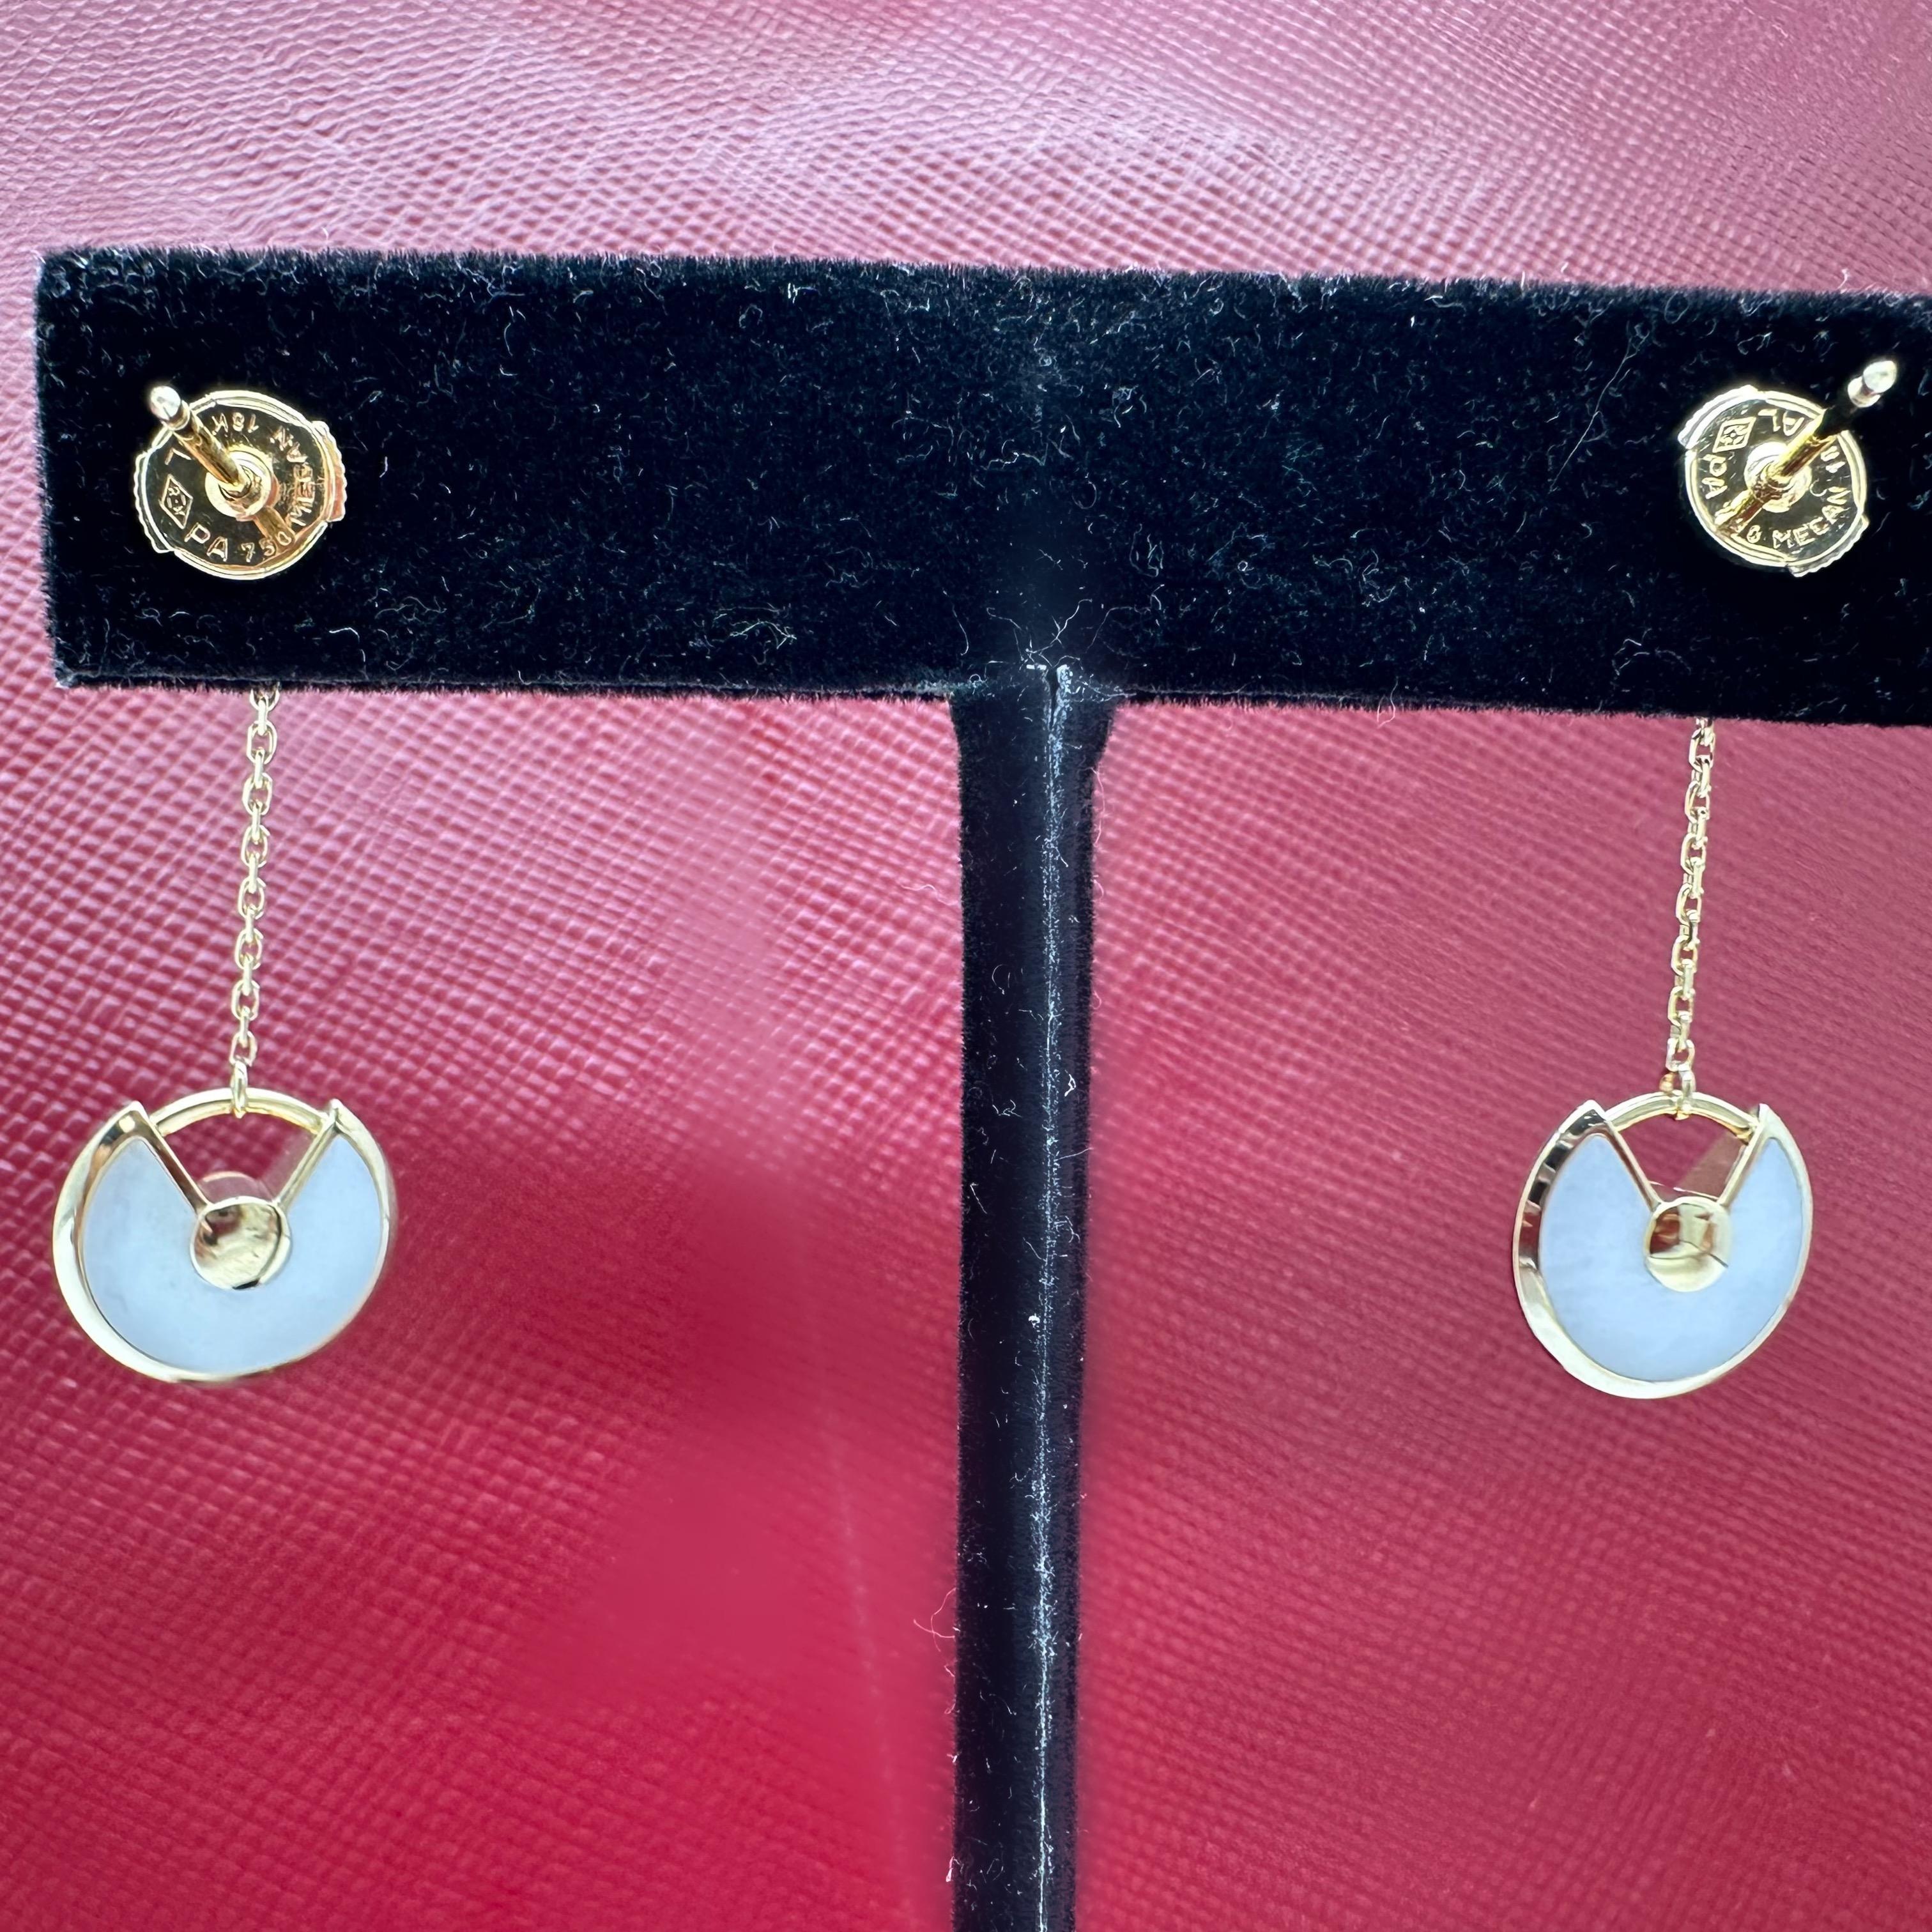 CARTIER Amulette de Cartier Mother 0f Pearl & Diamond Earrings XS in 18kt YG 5